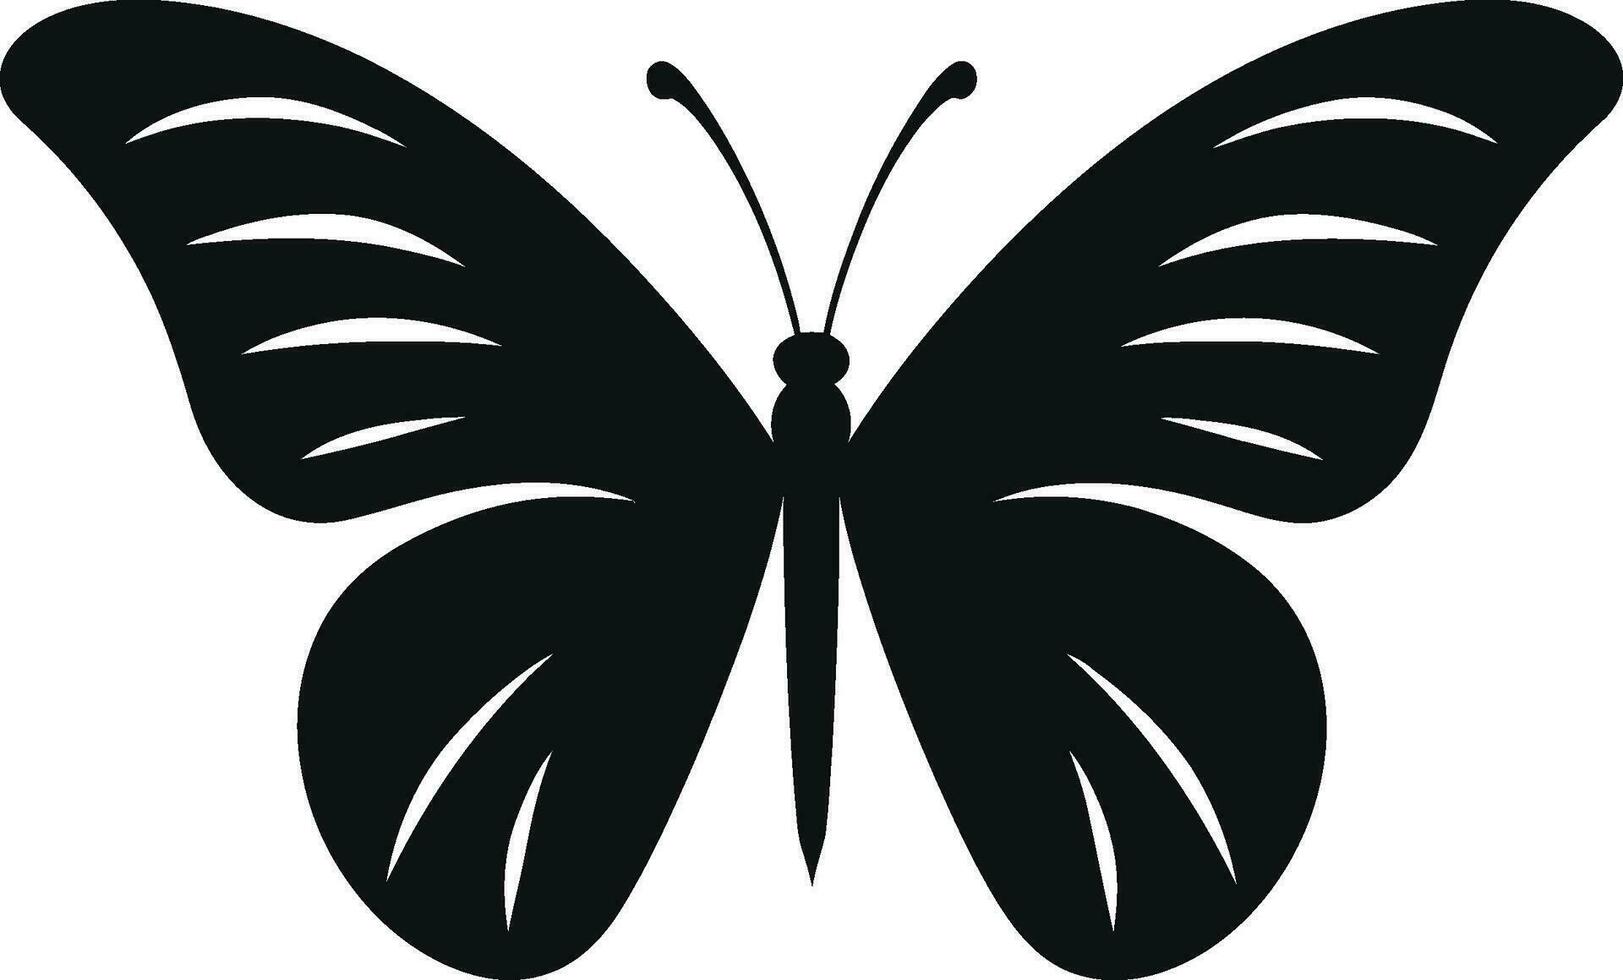 Elegance Takes Wing Butterfly Emblem in Black Noir Beauty in Shadows Monochrome Butterfly Logo vector